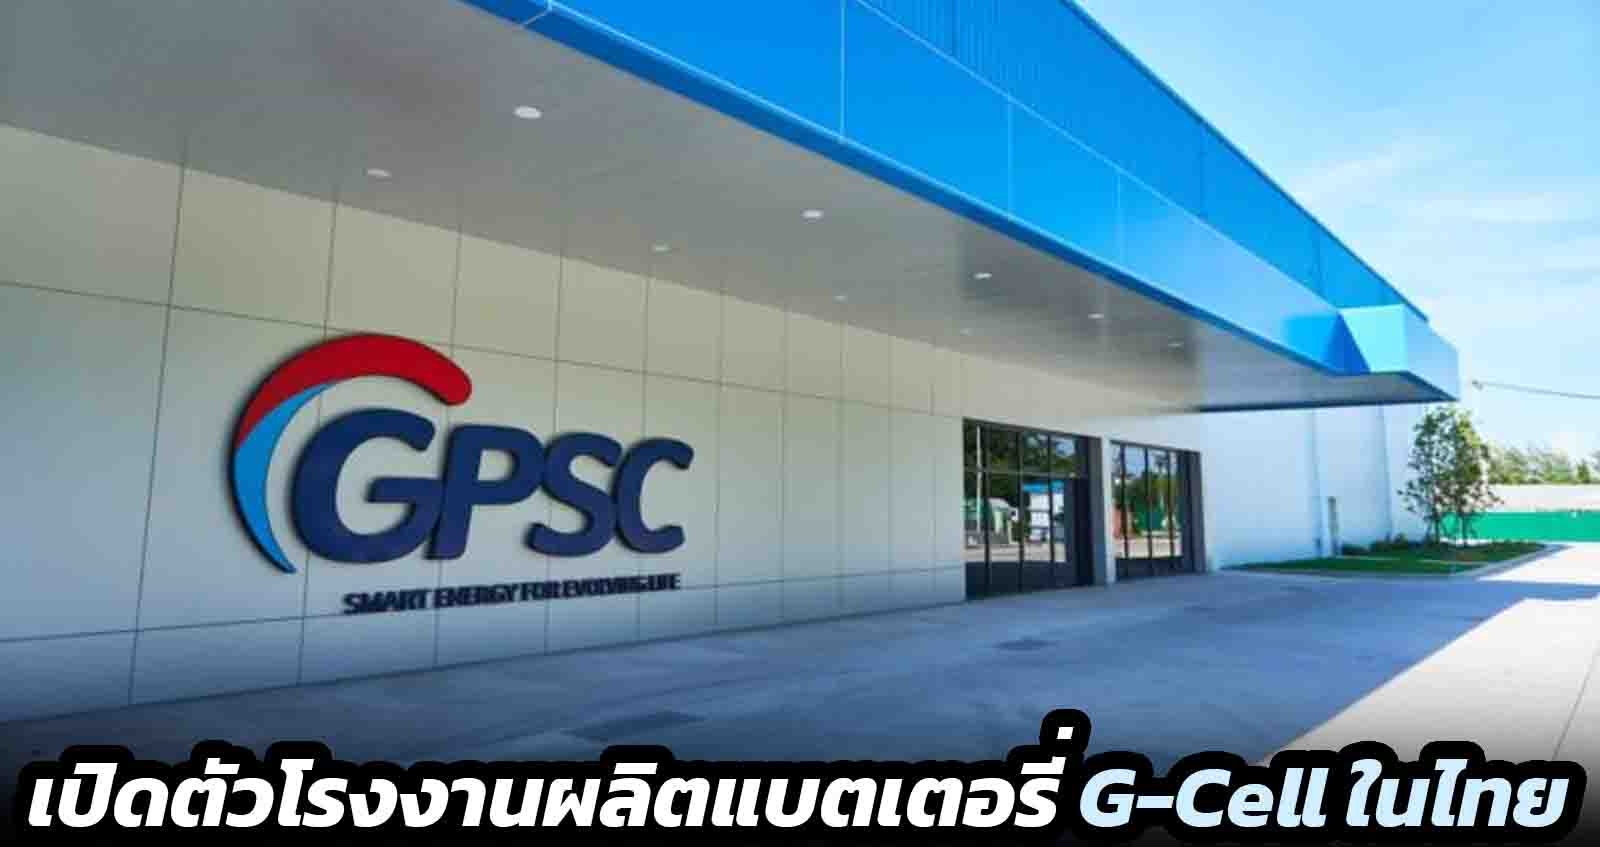 เปิดตัวโรงงานผลิตแบตเตอรี่ G-Cell ในไทย โดย GPSC